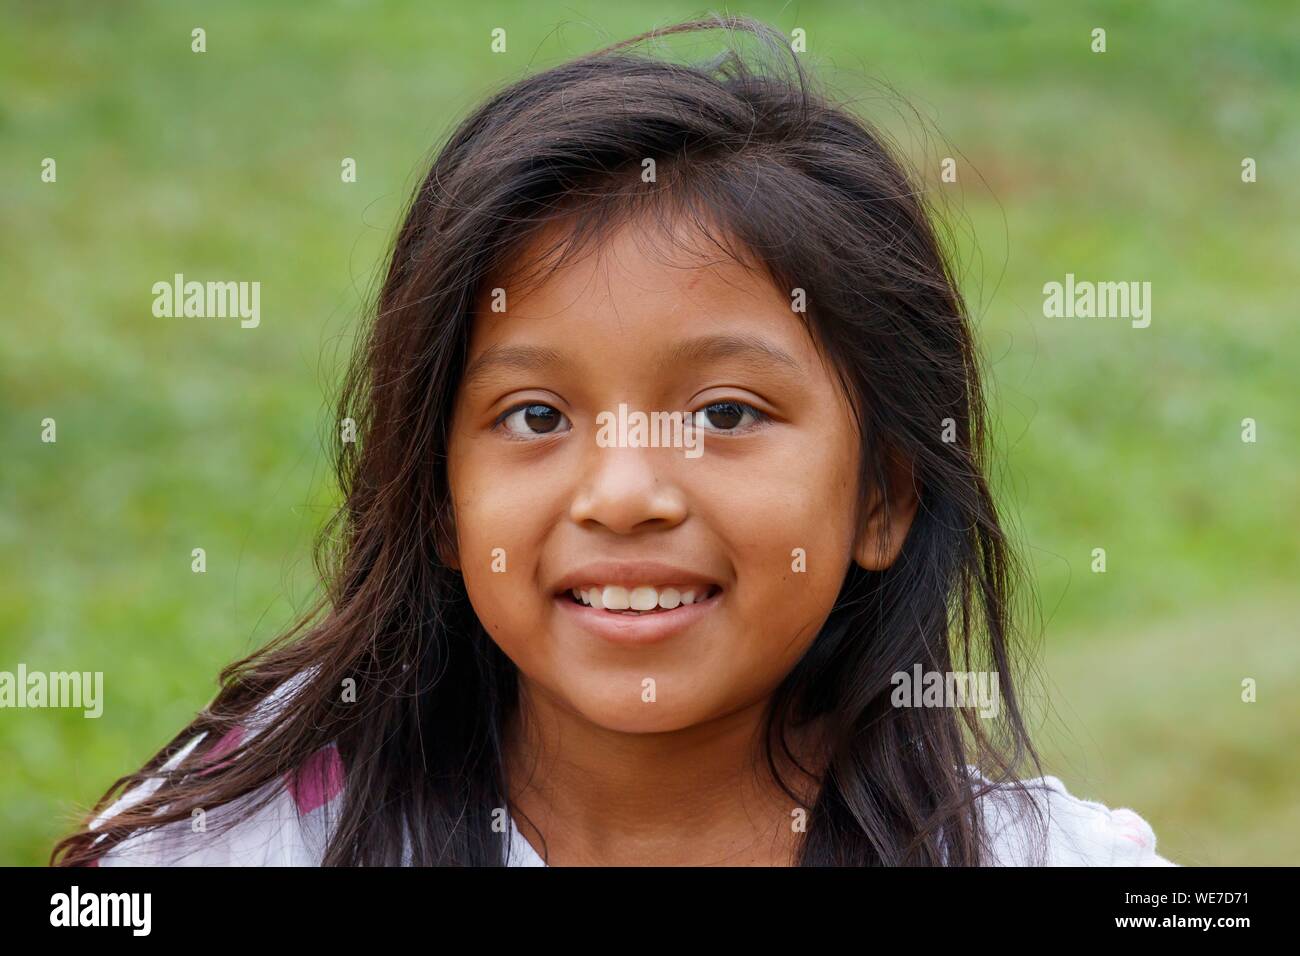 Mexico, Chiapas state, Las Guacamayas, a little Lacandon girl portrait Stock Photo